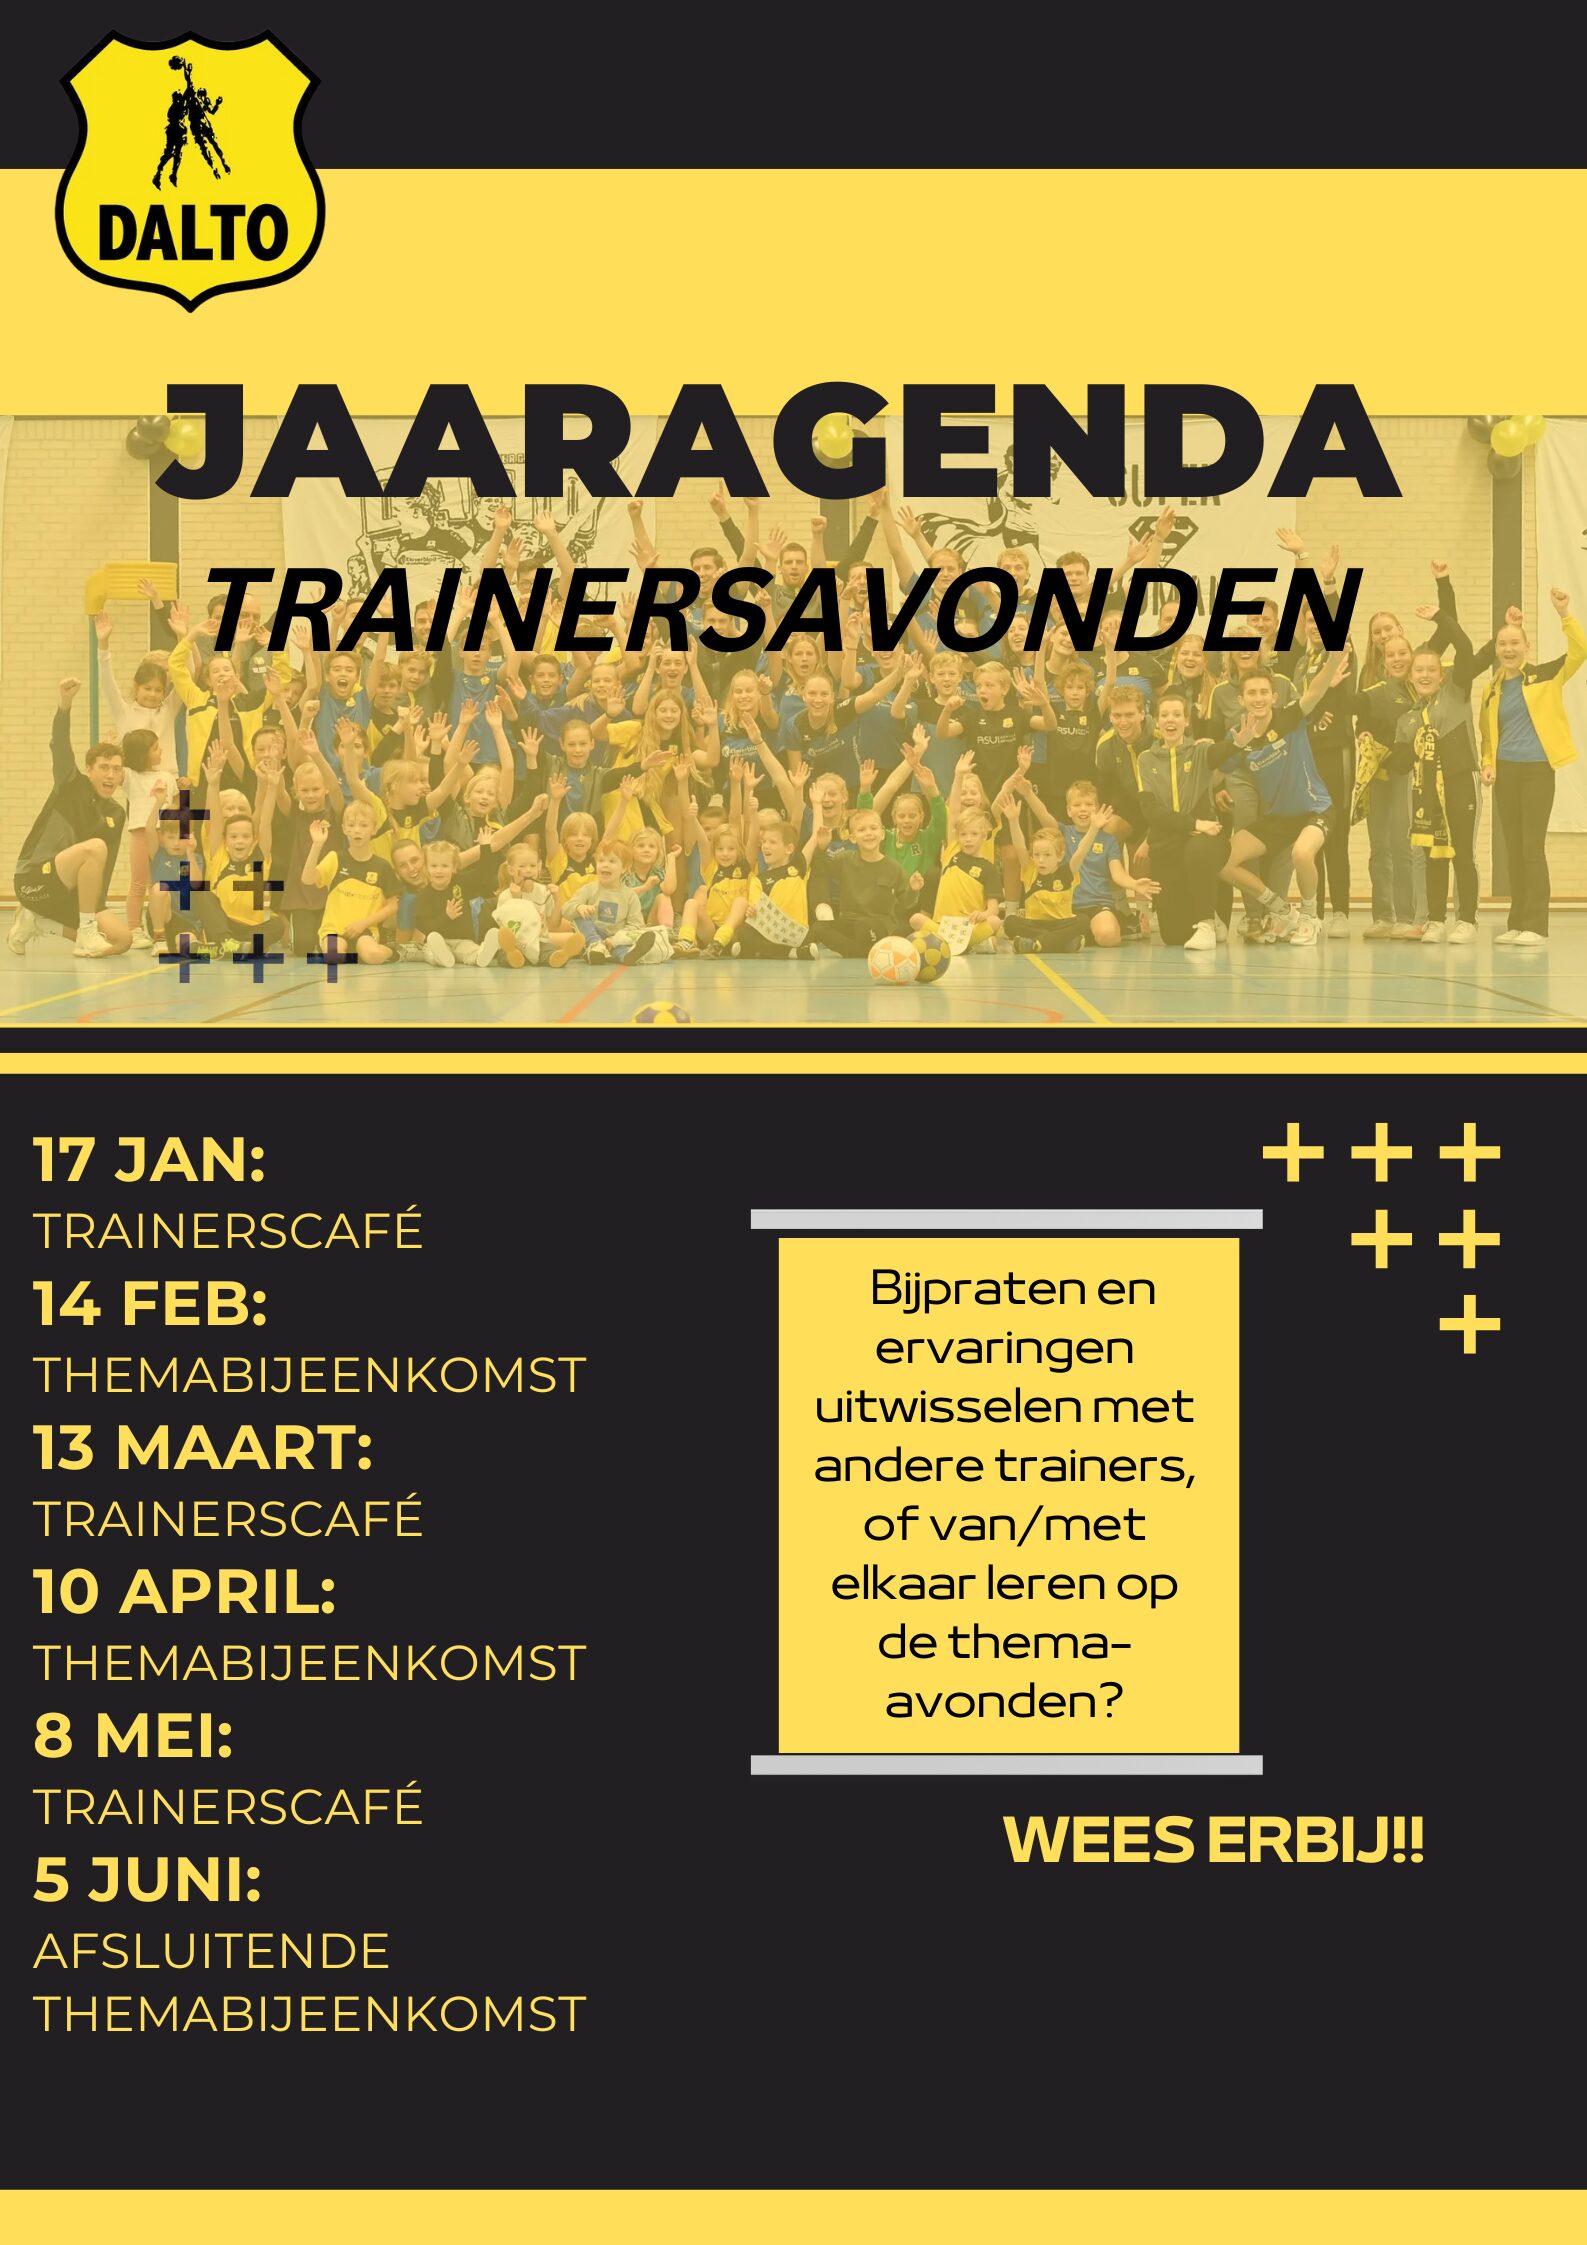 HJ Jaaragenda Trainersavonden aangepaste versie - Dalto/Klaverblad Verzekeringen - Korfbal - Driebergen